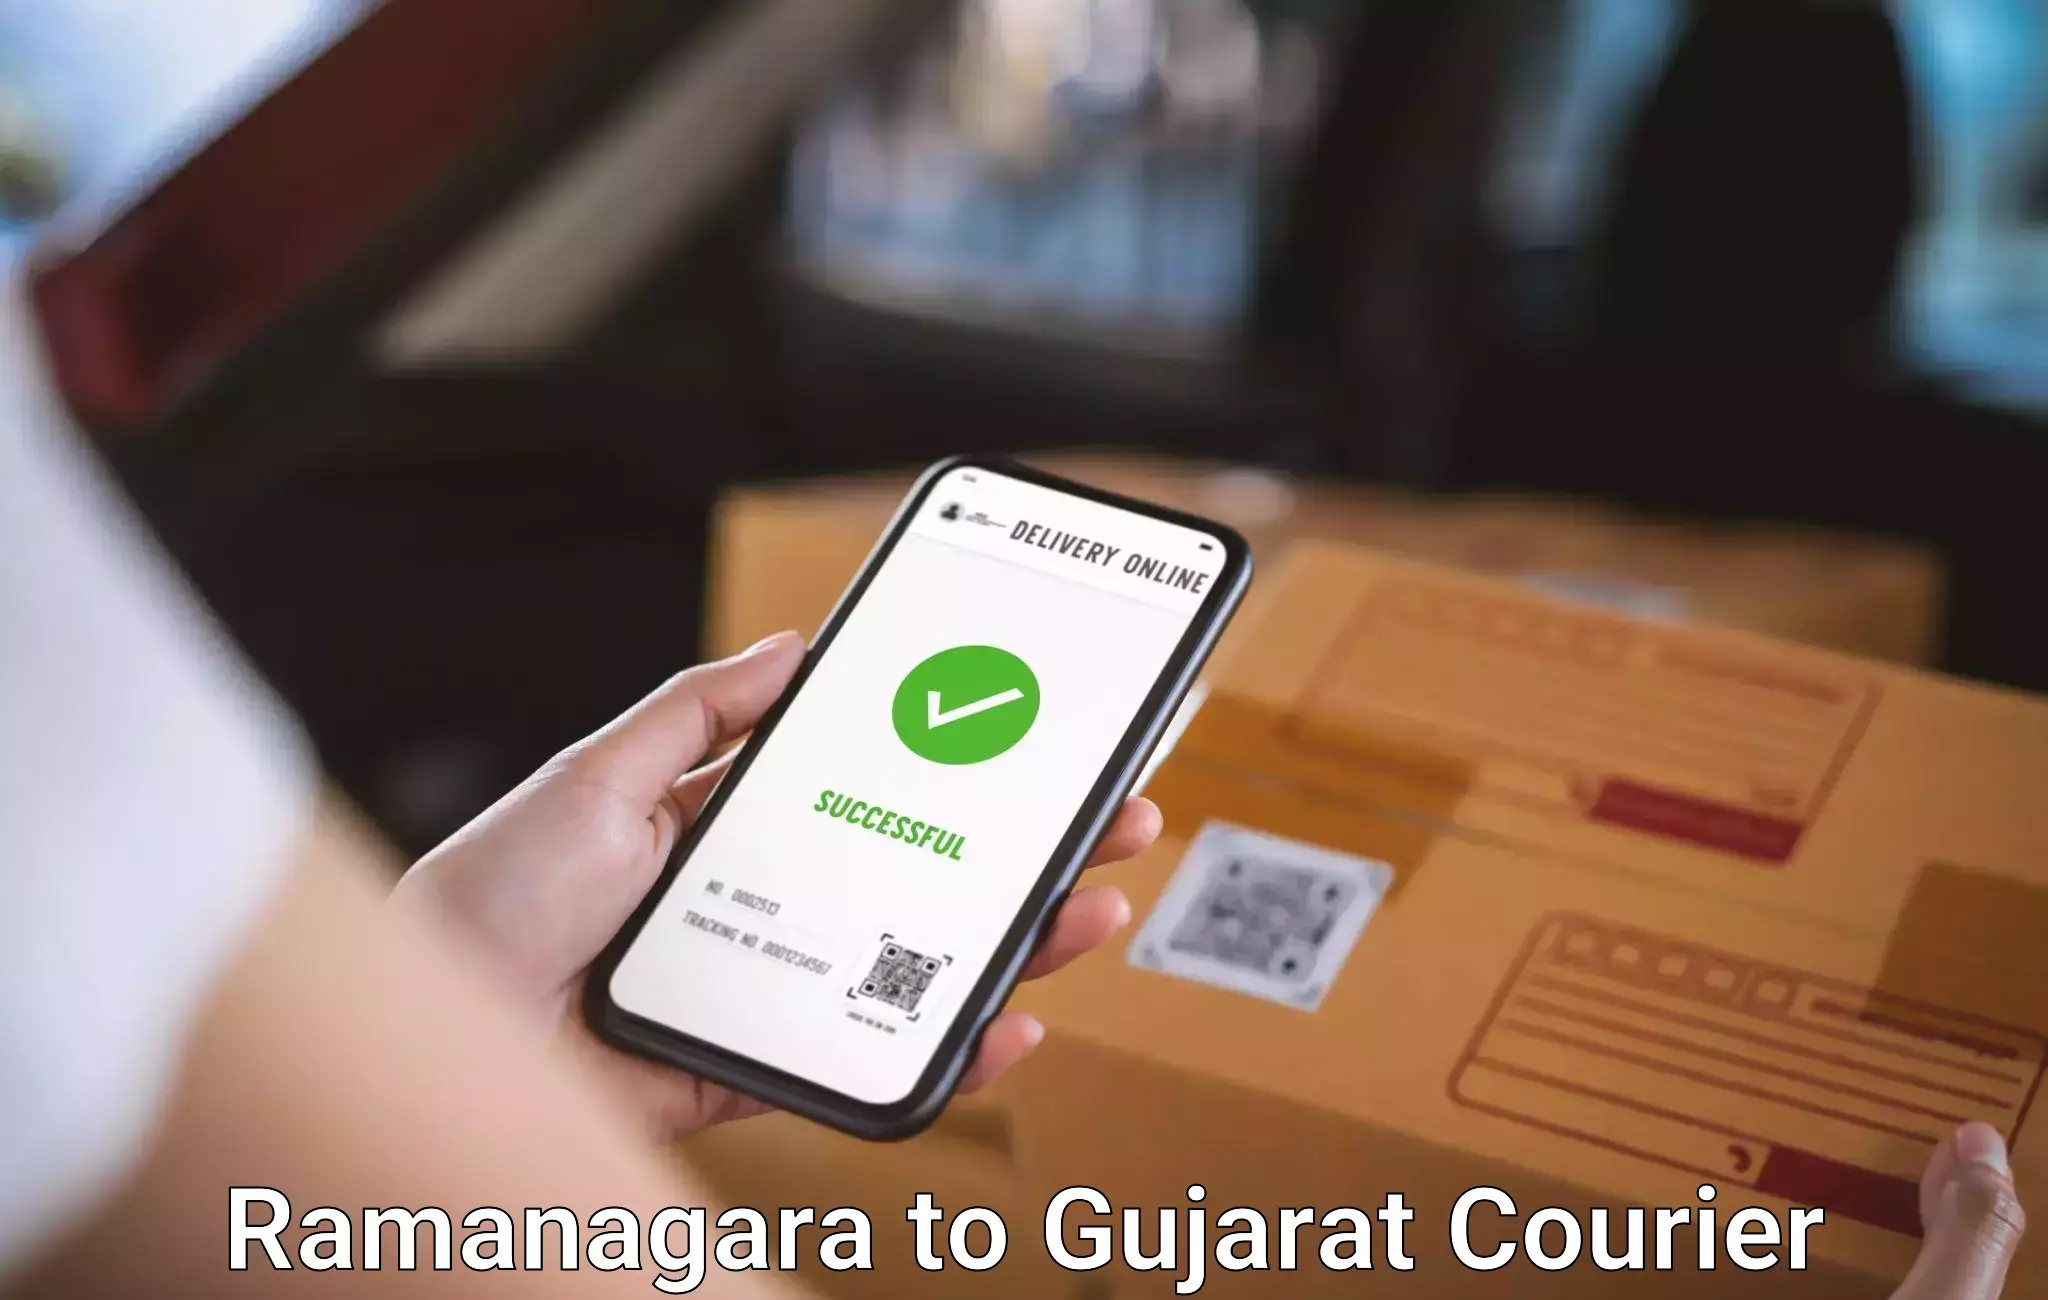 Baggage relocation service Ramanagara to Gujarat